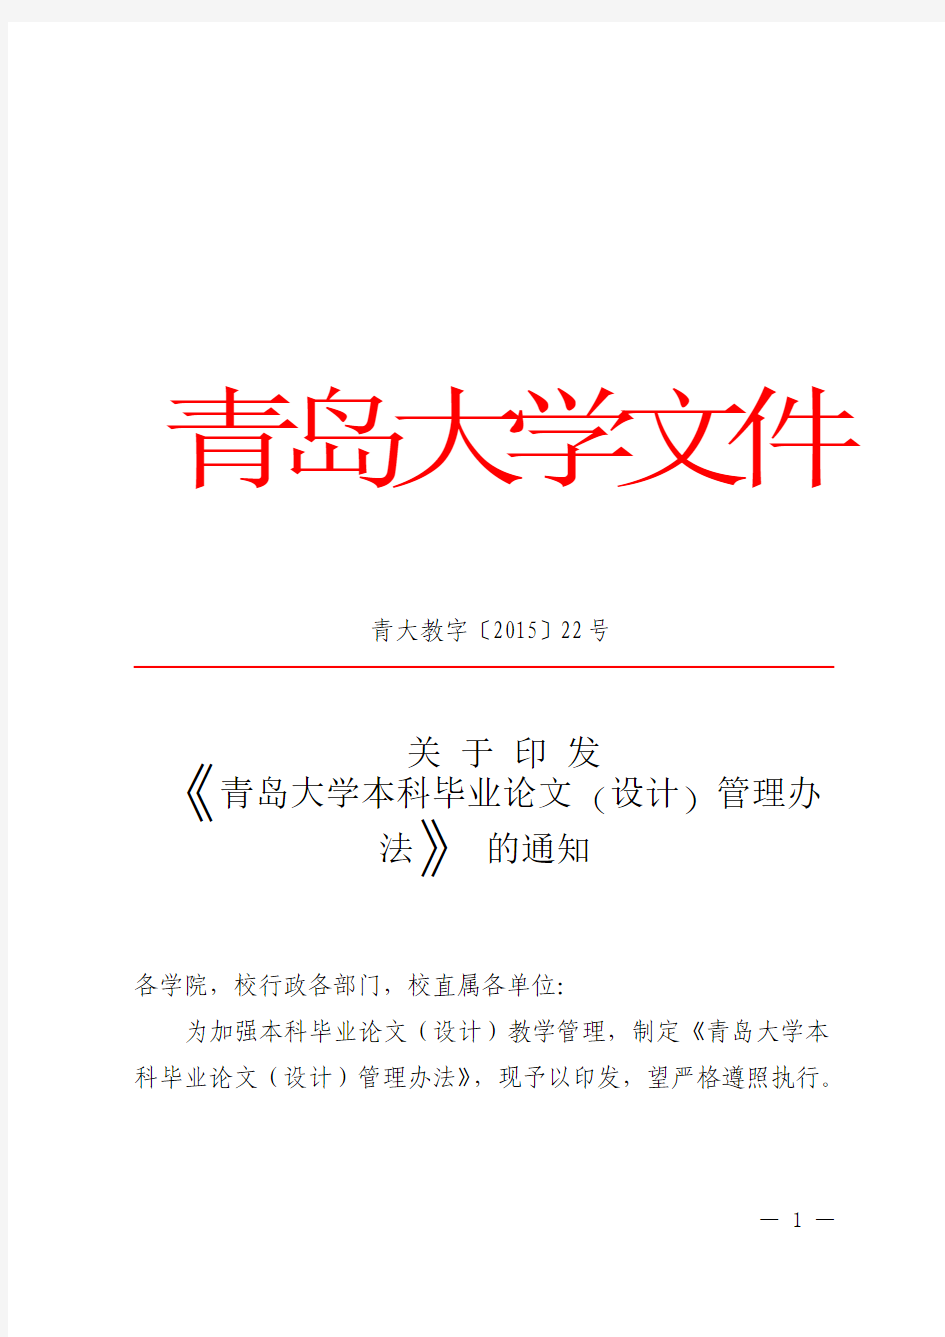 青大教字(2015)22号关于印发《青岛大学本科毕业论文(设计)管理办法》的通知